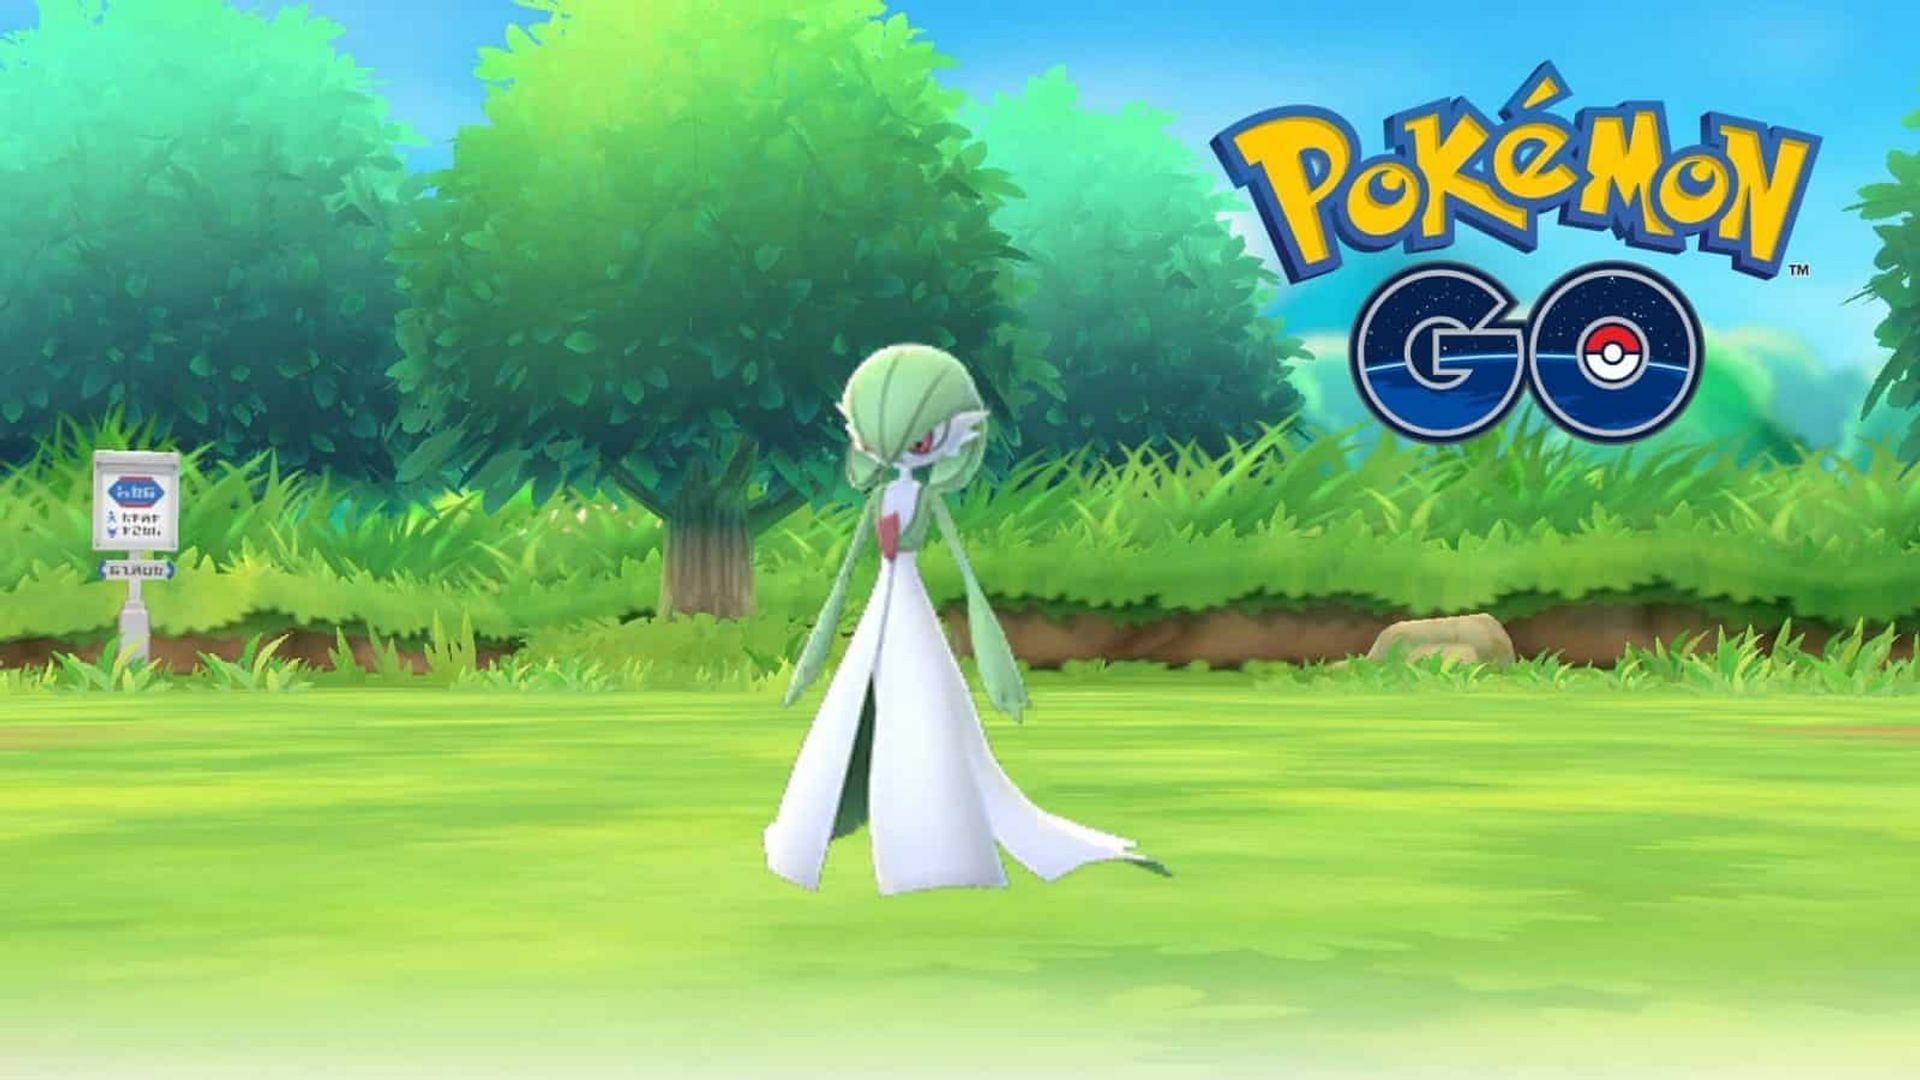 Gardevoir as it appears in Pokemon GO. (image via Niantic)